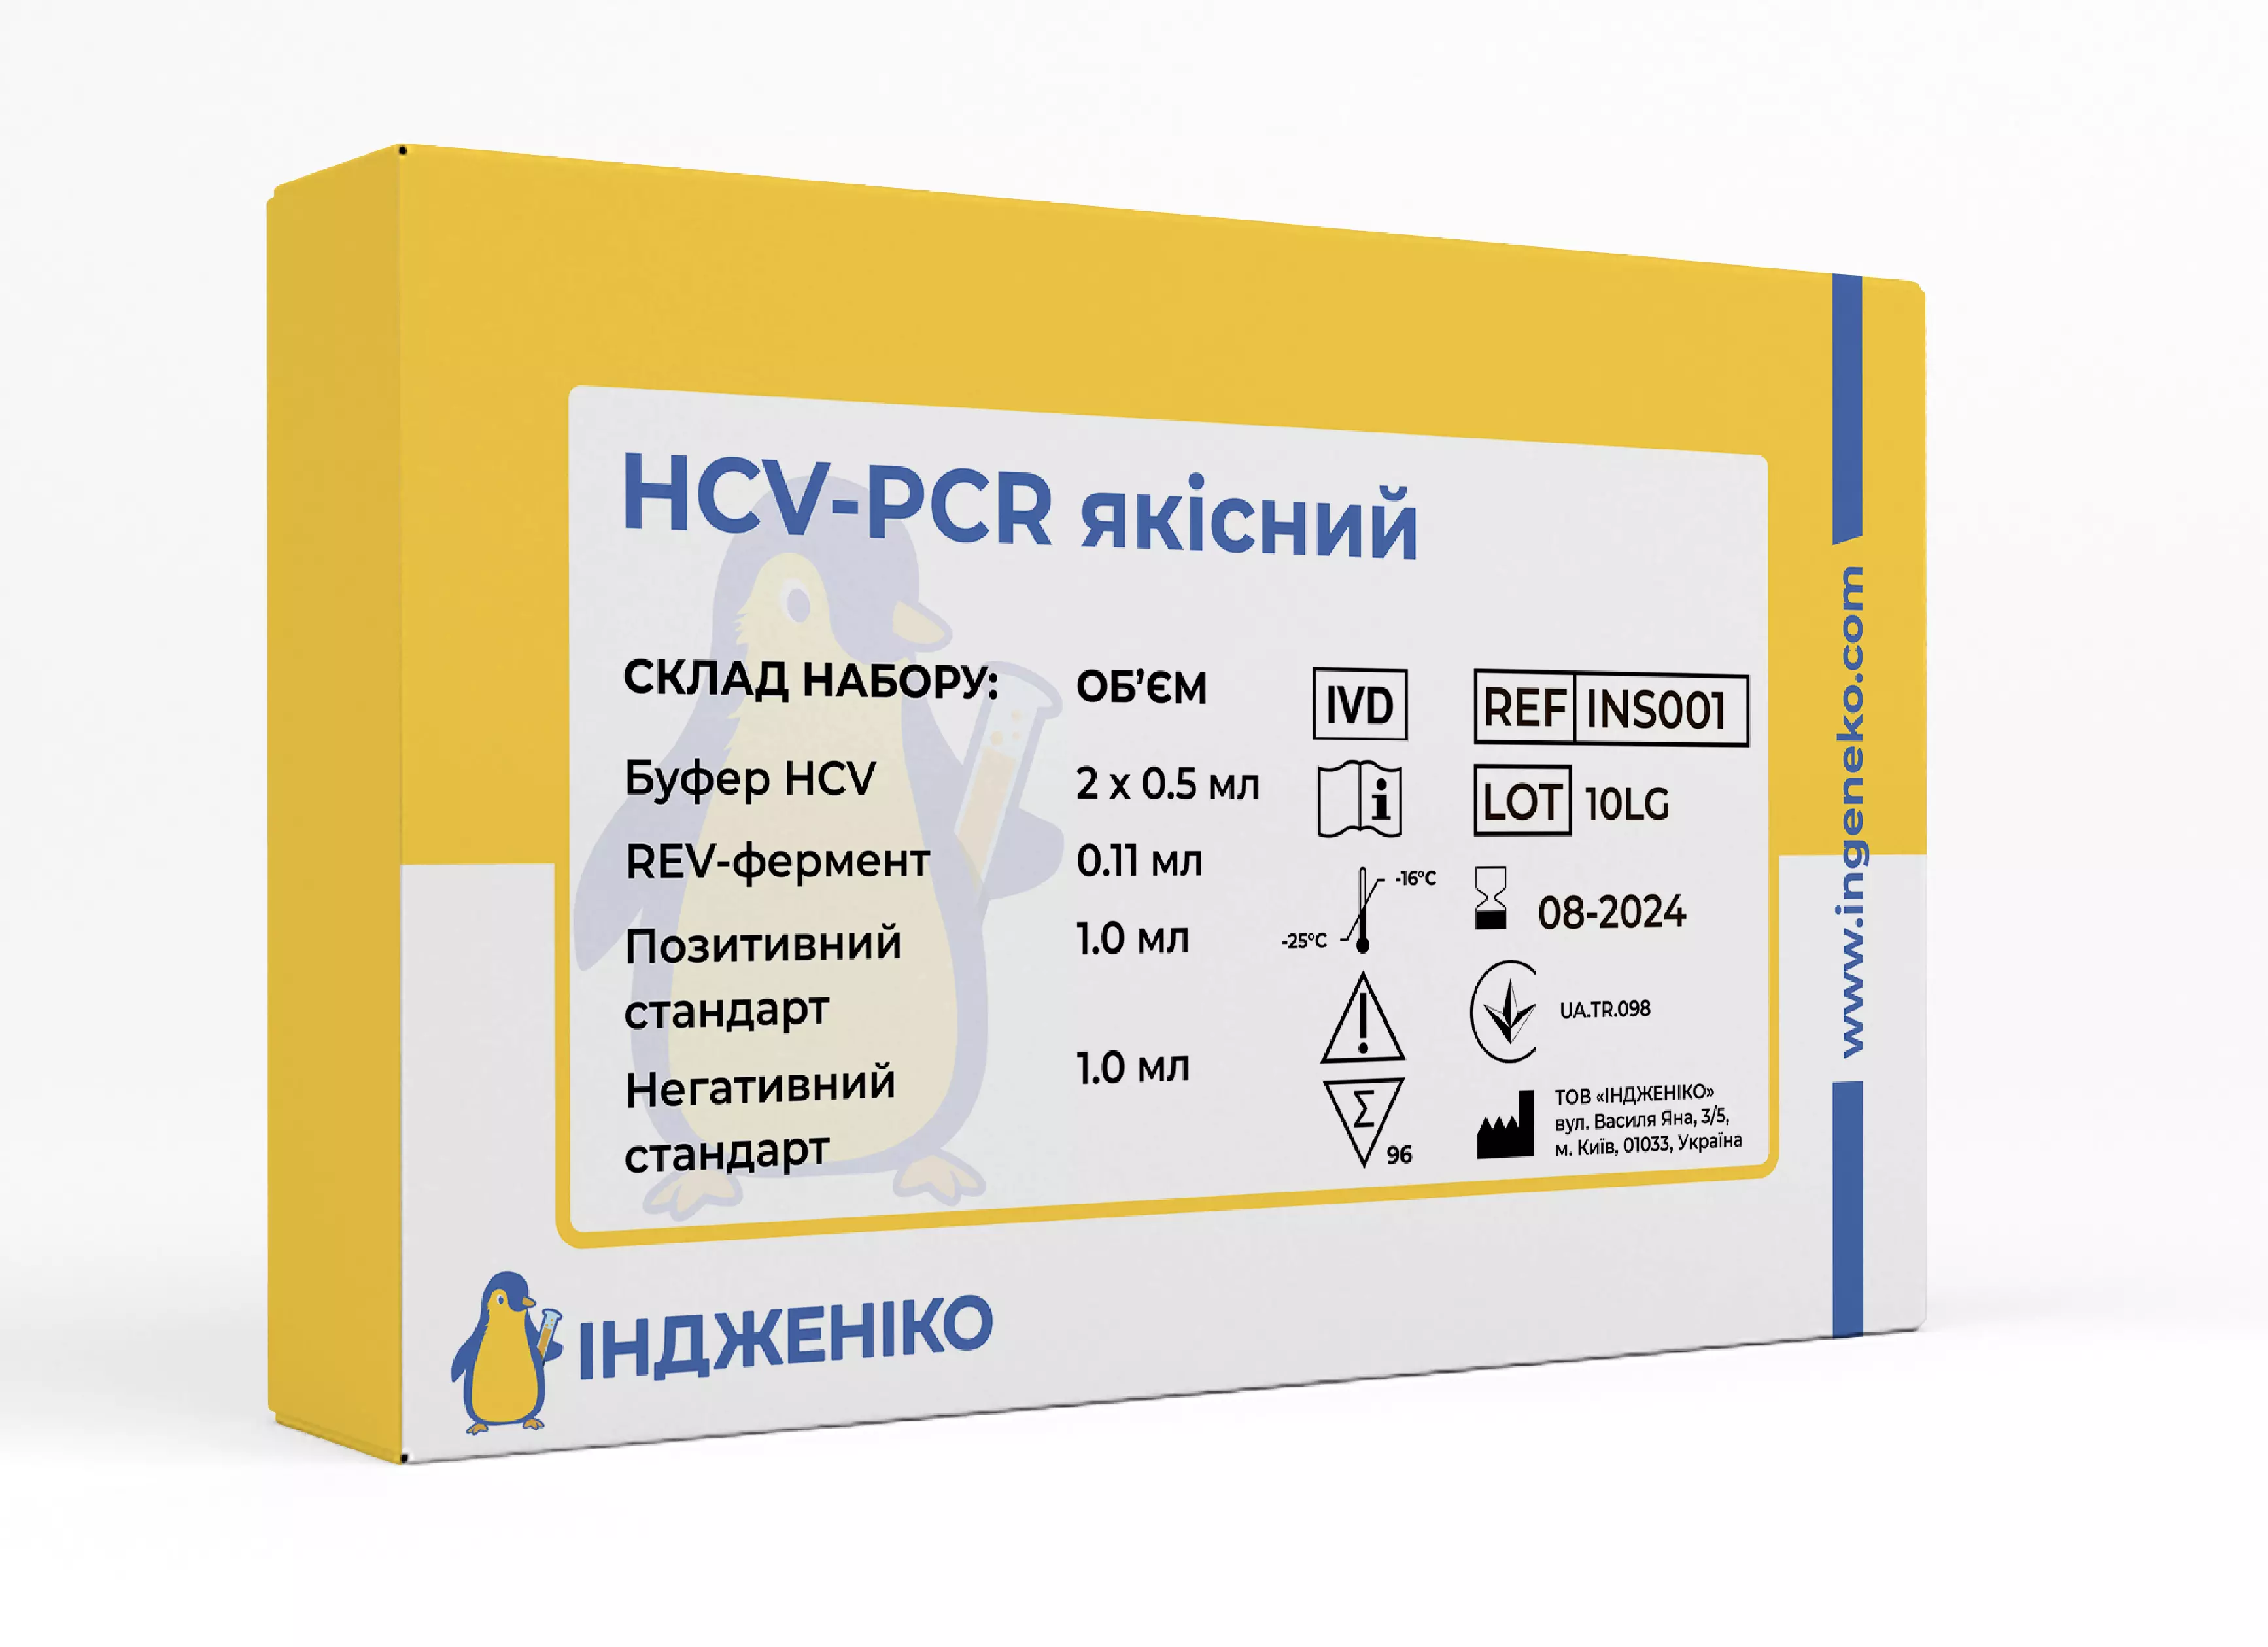 HCV-PCR quality